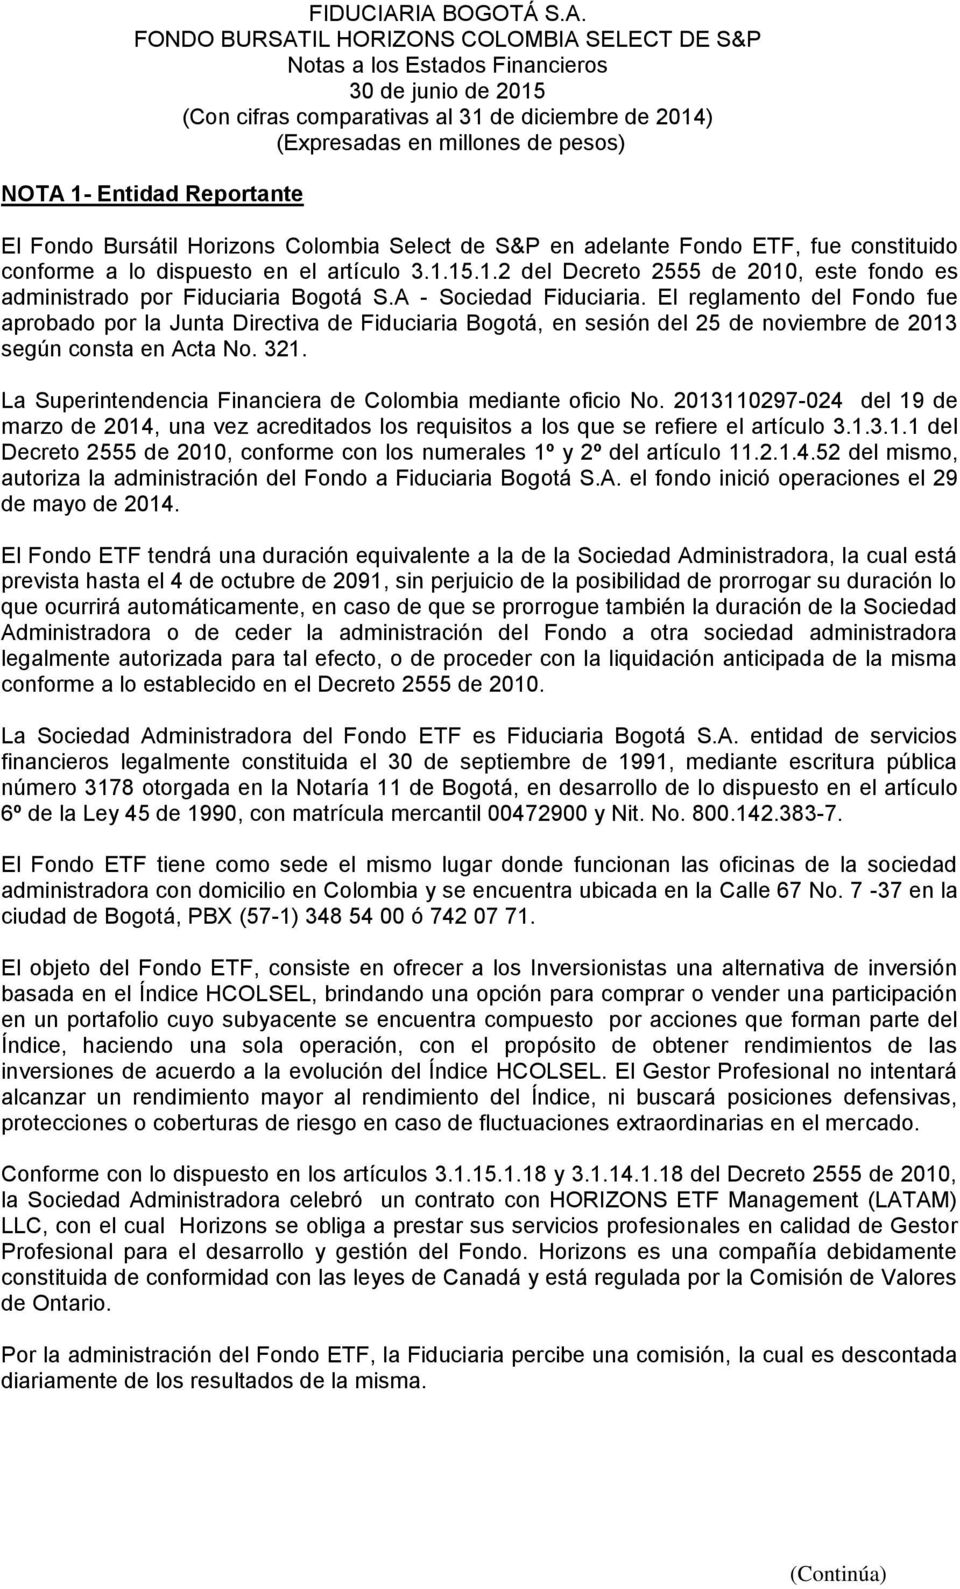 El reglamento del Fondo fue aprobado por la Junta Directiva de Fiduciaria Bogotá, en sesión del 25 de noviembre de 2013 según consta en Acta No. 321.